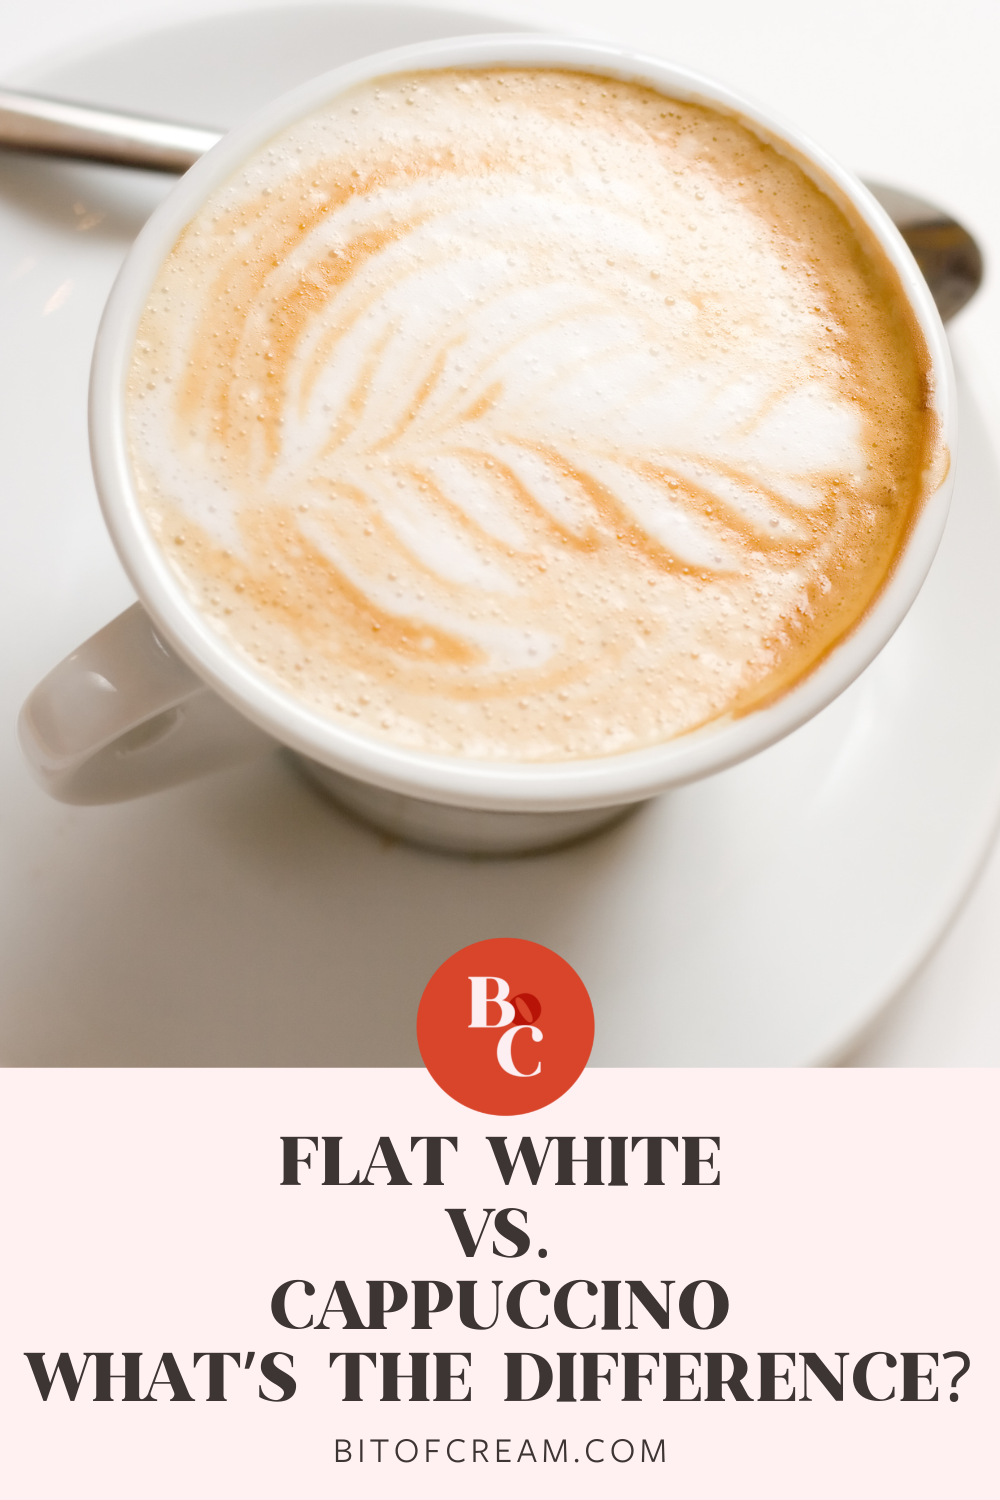 Flat white vs Cappuccino